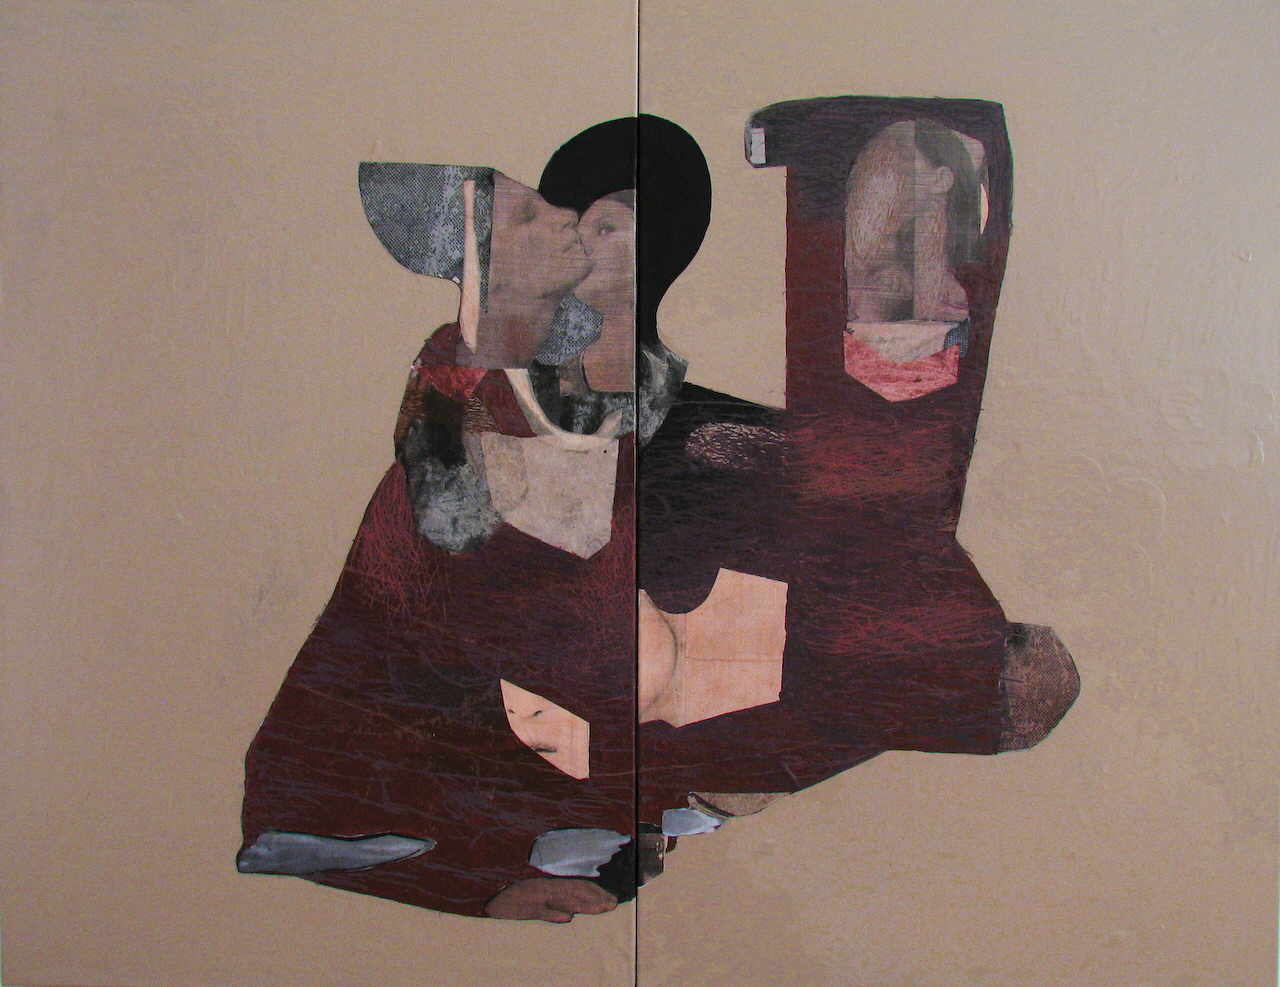 Mendrek Pawel 
"small talk", 2007
Mischtechnik / Leinwand
140 x 200 cm (2 teilig)